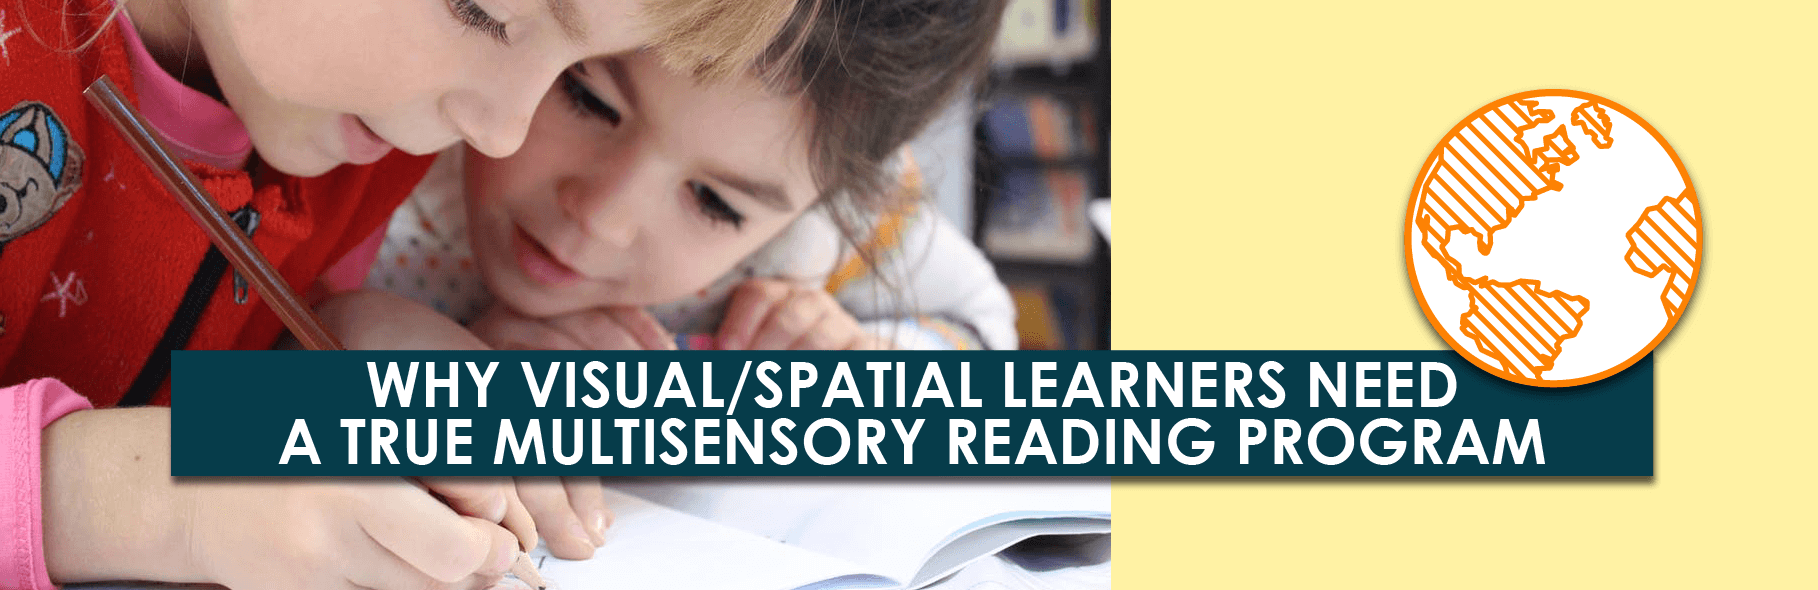 Por qué los estudiantes visuales/espaciales necesitan un verdadero programa de lectura multisensorial